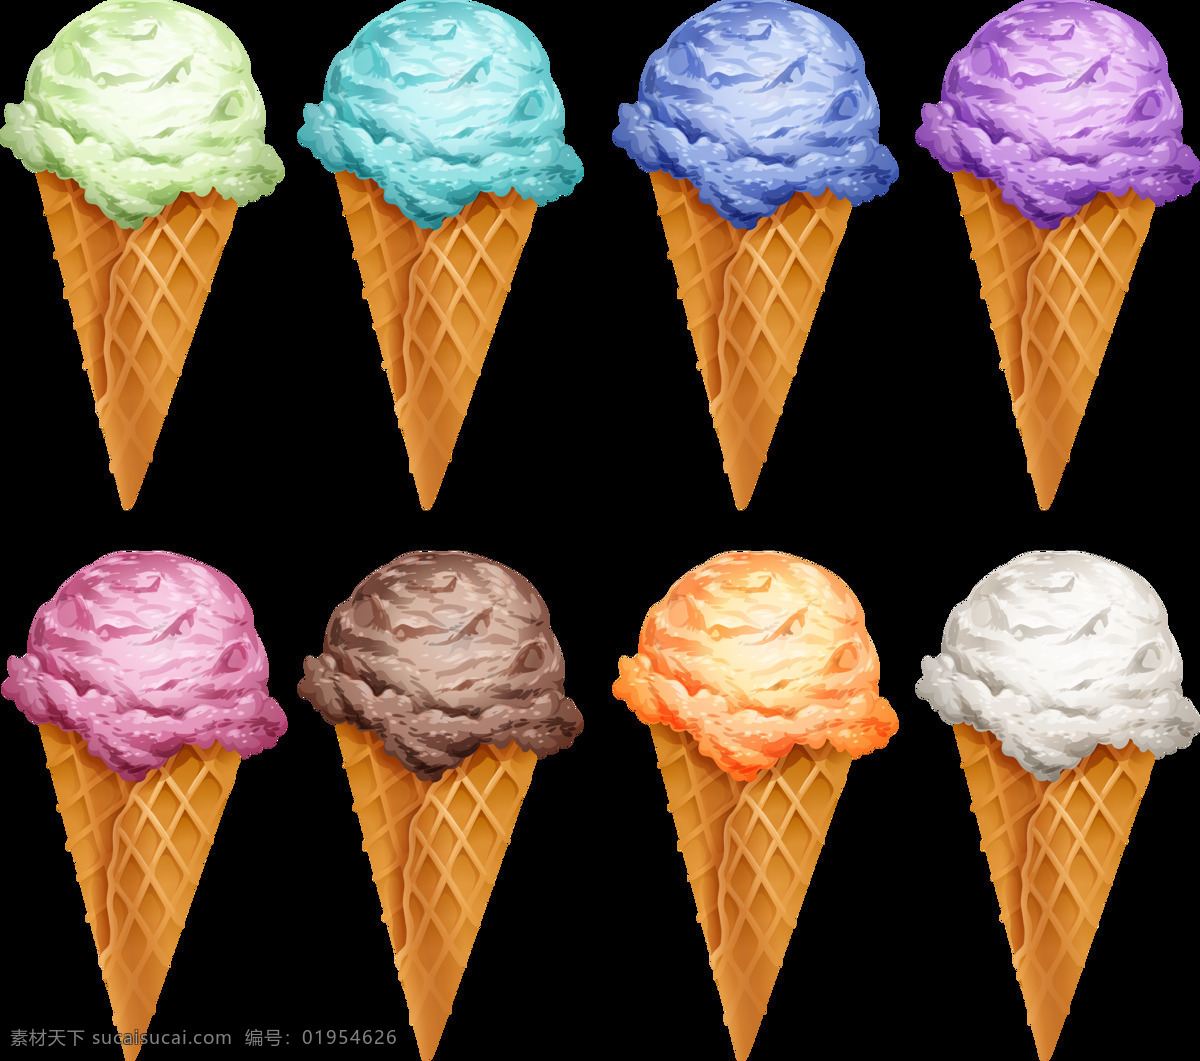 写实 风格 彩色 冰淇淋 免 抠 透明 图 层 甜品图标 冷饮插图 清凉甜品 冰淇淋标志 雪糕图标 冰激凌图标 冰激凌插图 卡通冰淇淋 手绘冰淇淋 雪糕图案 冰淇淋促销 冰淇淋素材